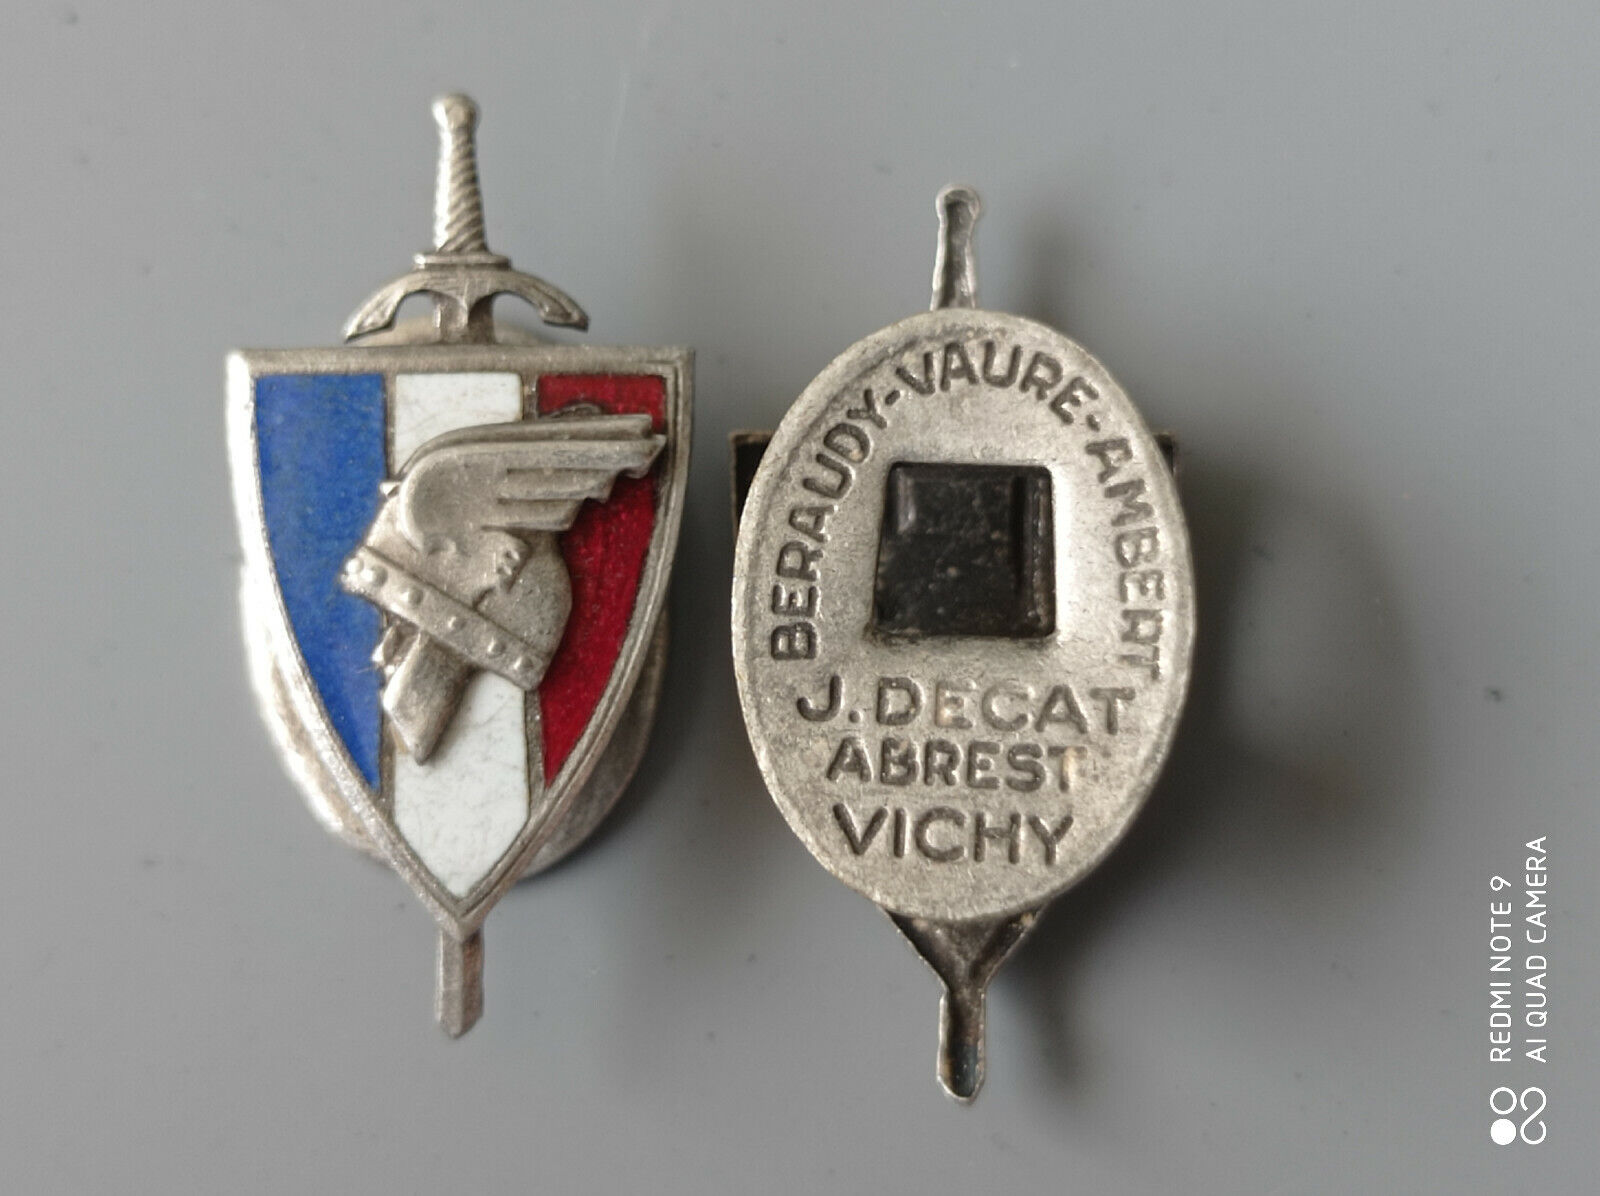 B9.O) INSIGNE n°1 du régime de VICHY ww2 39/45 French Medal